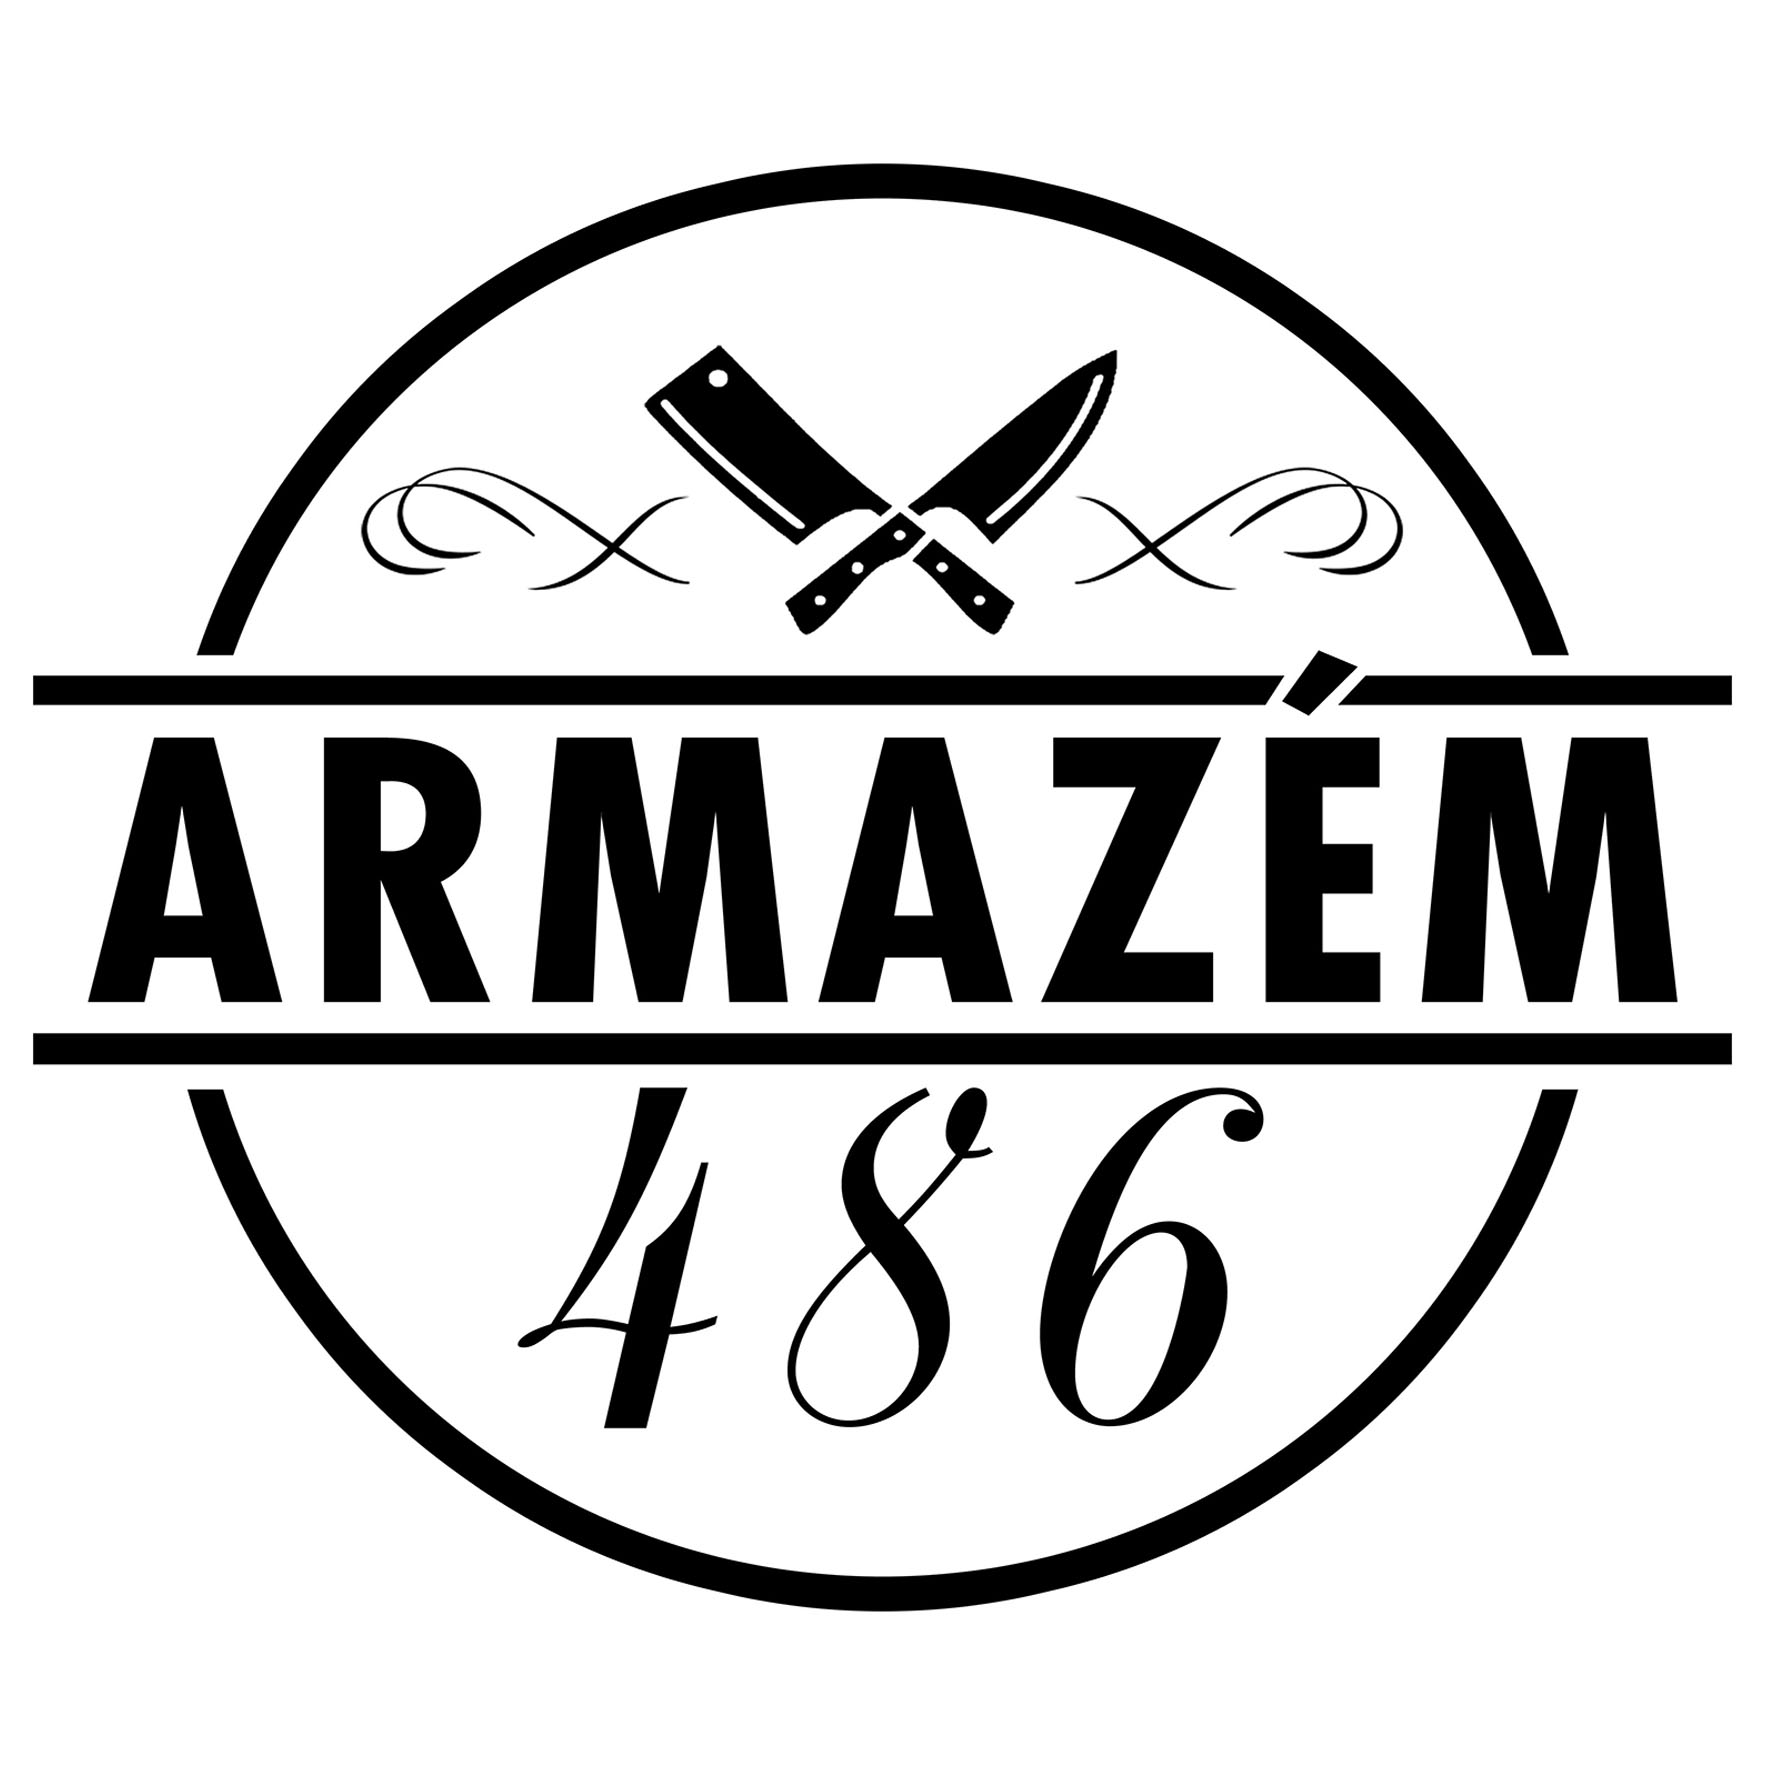 ARMAZÉM 486